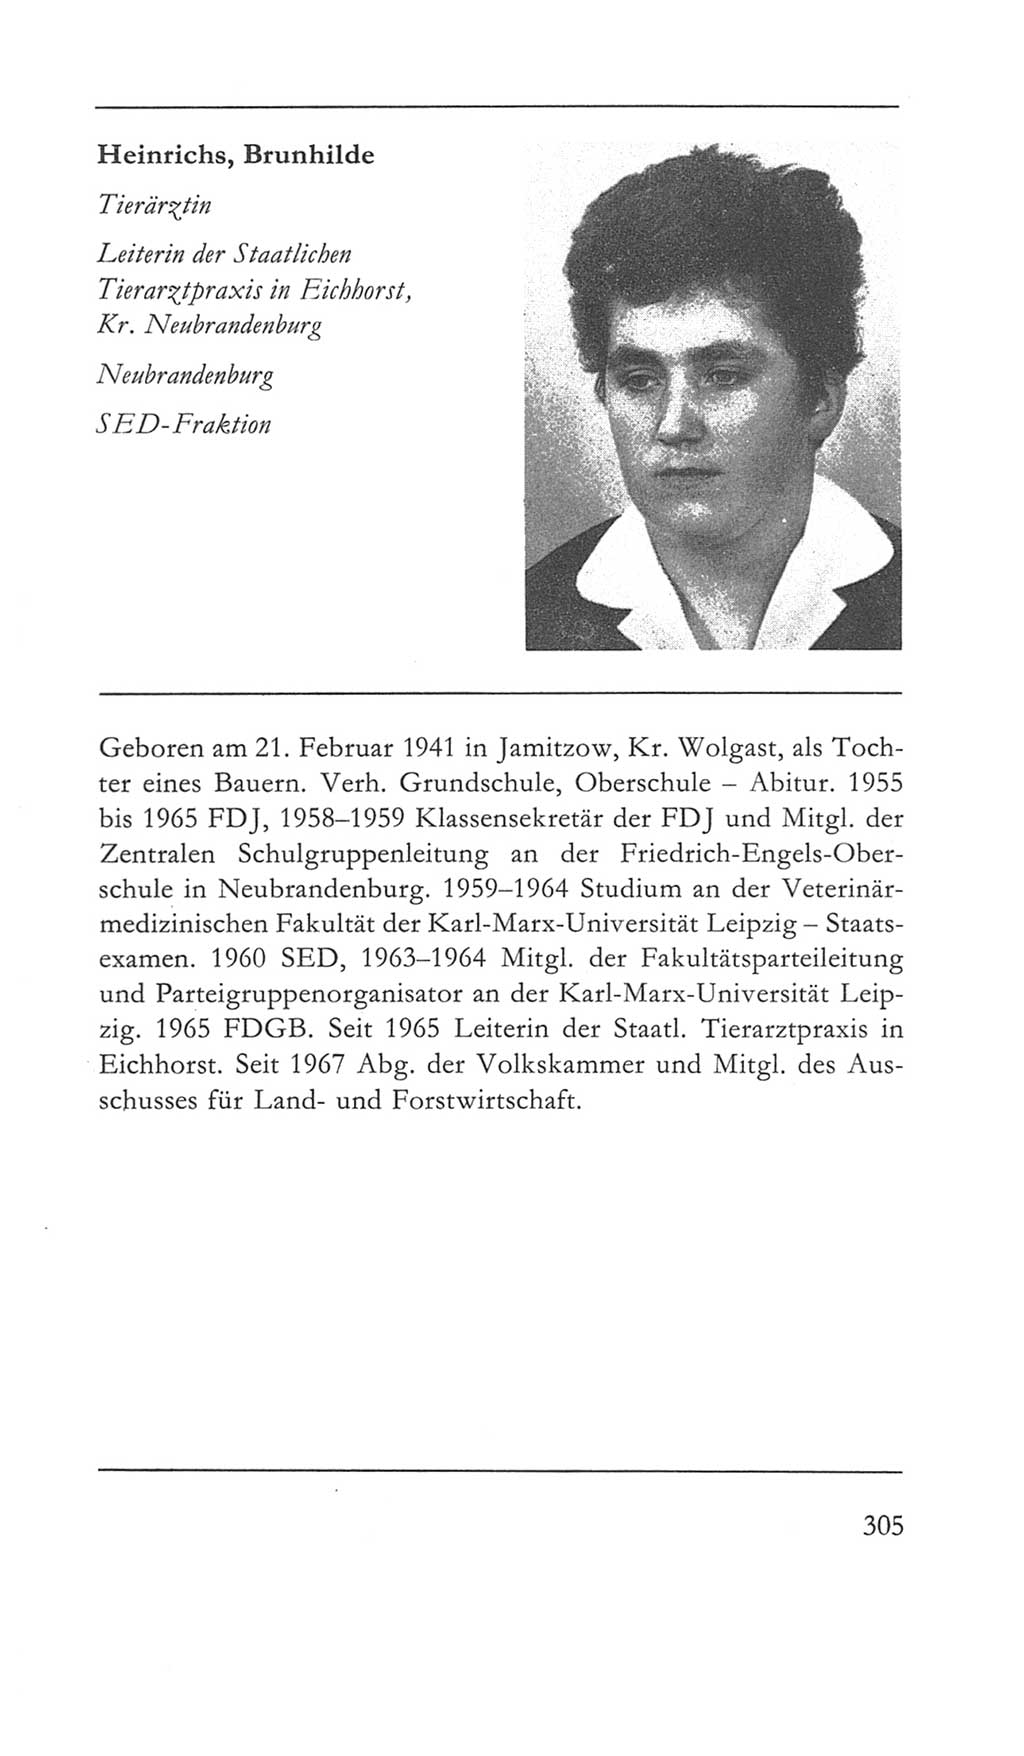 Volkskammer (VK) der Deutschen Demokratischen Republik (DDR) 5. Wahlperiode 1967-1971, Seite 305 (VK. DDR 5. WP. 1967-1971, S. 305)